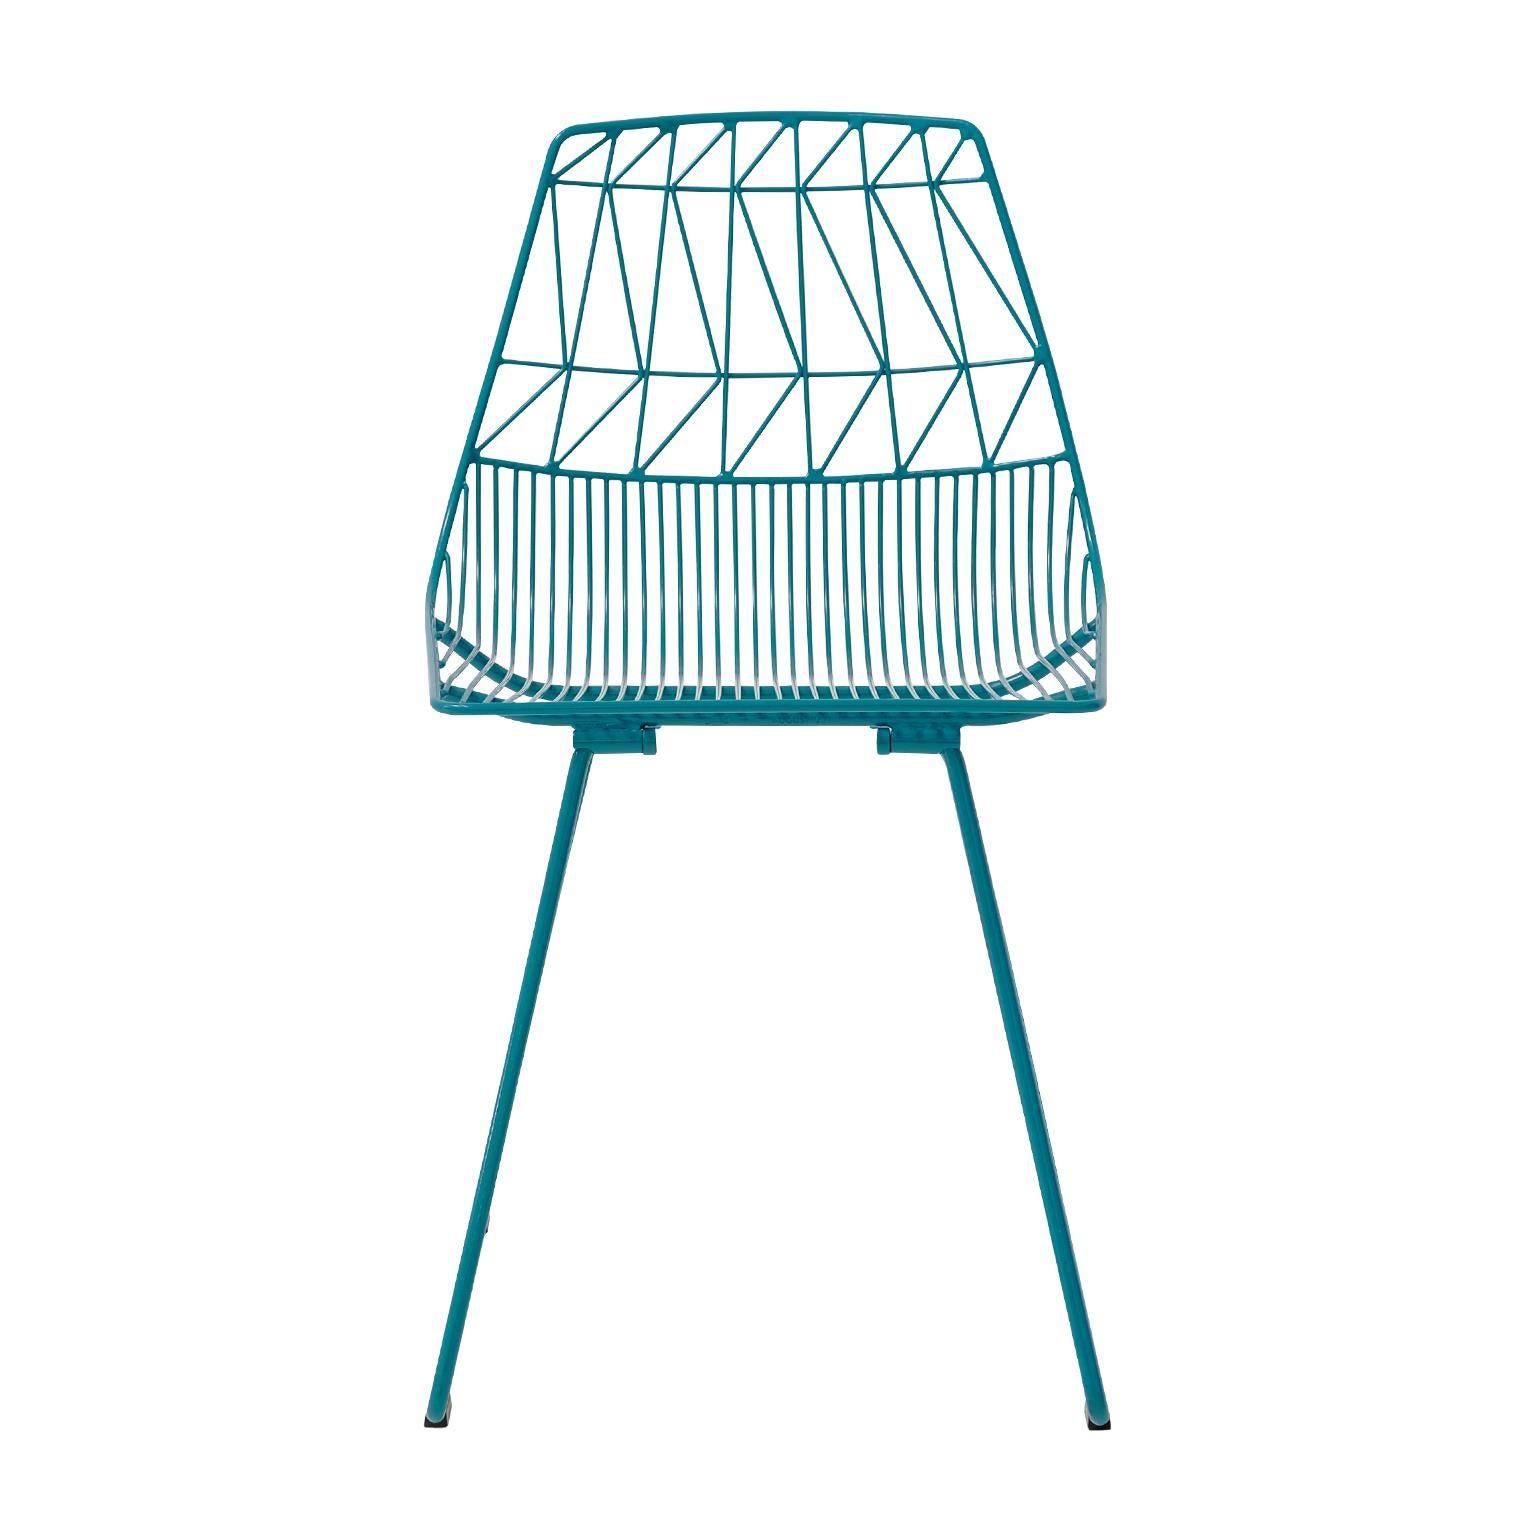 Cette nouvelle chaise Classic, inspirée des designs du milieu du siècle dernier, a révolutionné l'industrie du mobilier en fil de fer avec son design épuré, avant-gardiste et frais. La chaise d'appoint Lucy est durable pour les projets commerciaux